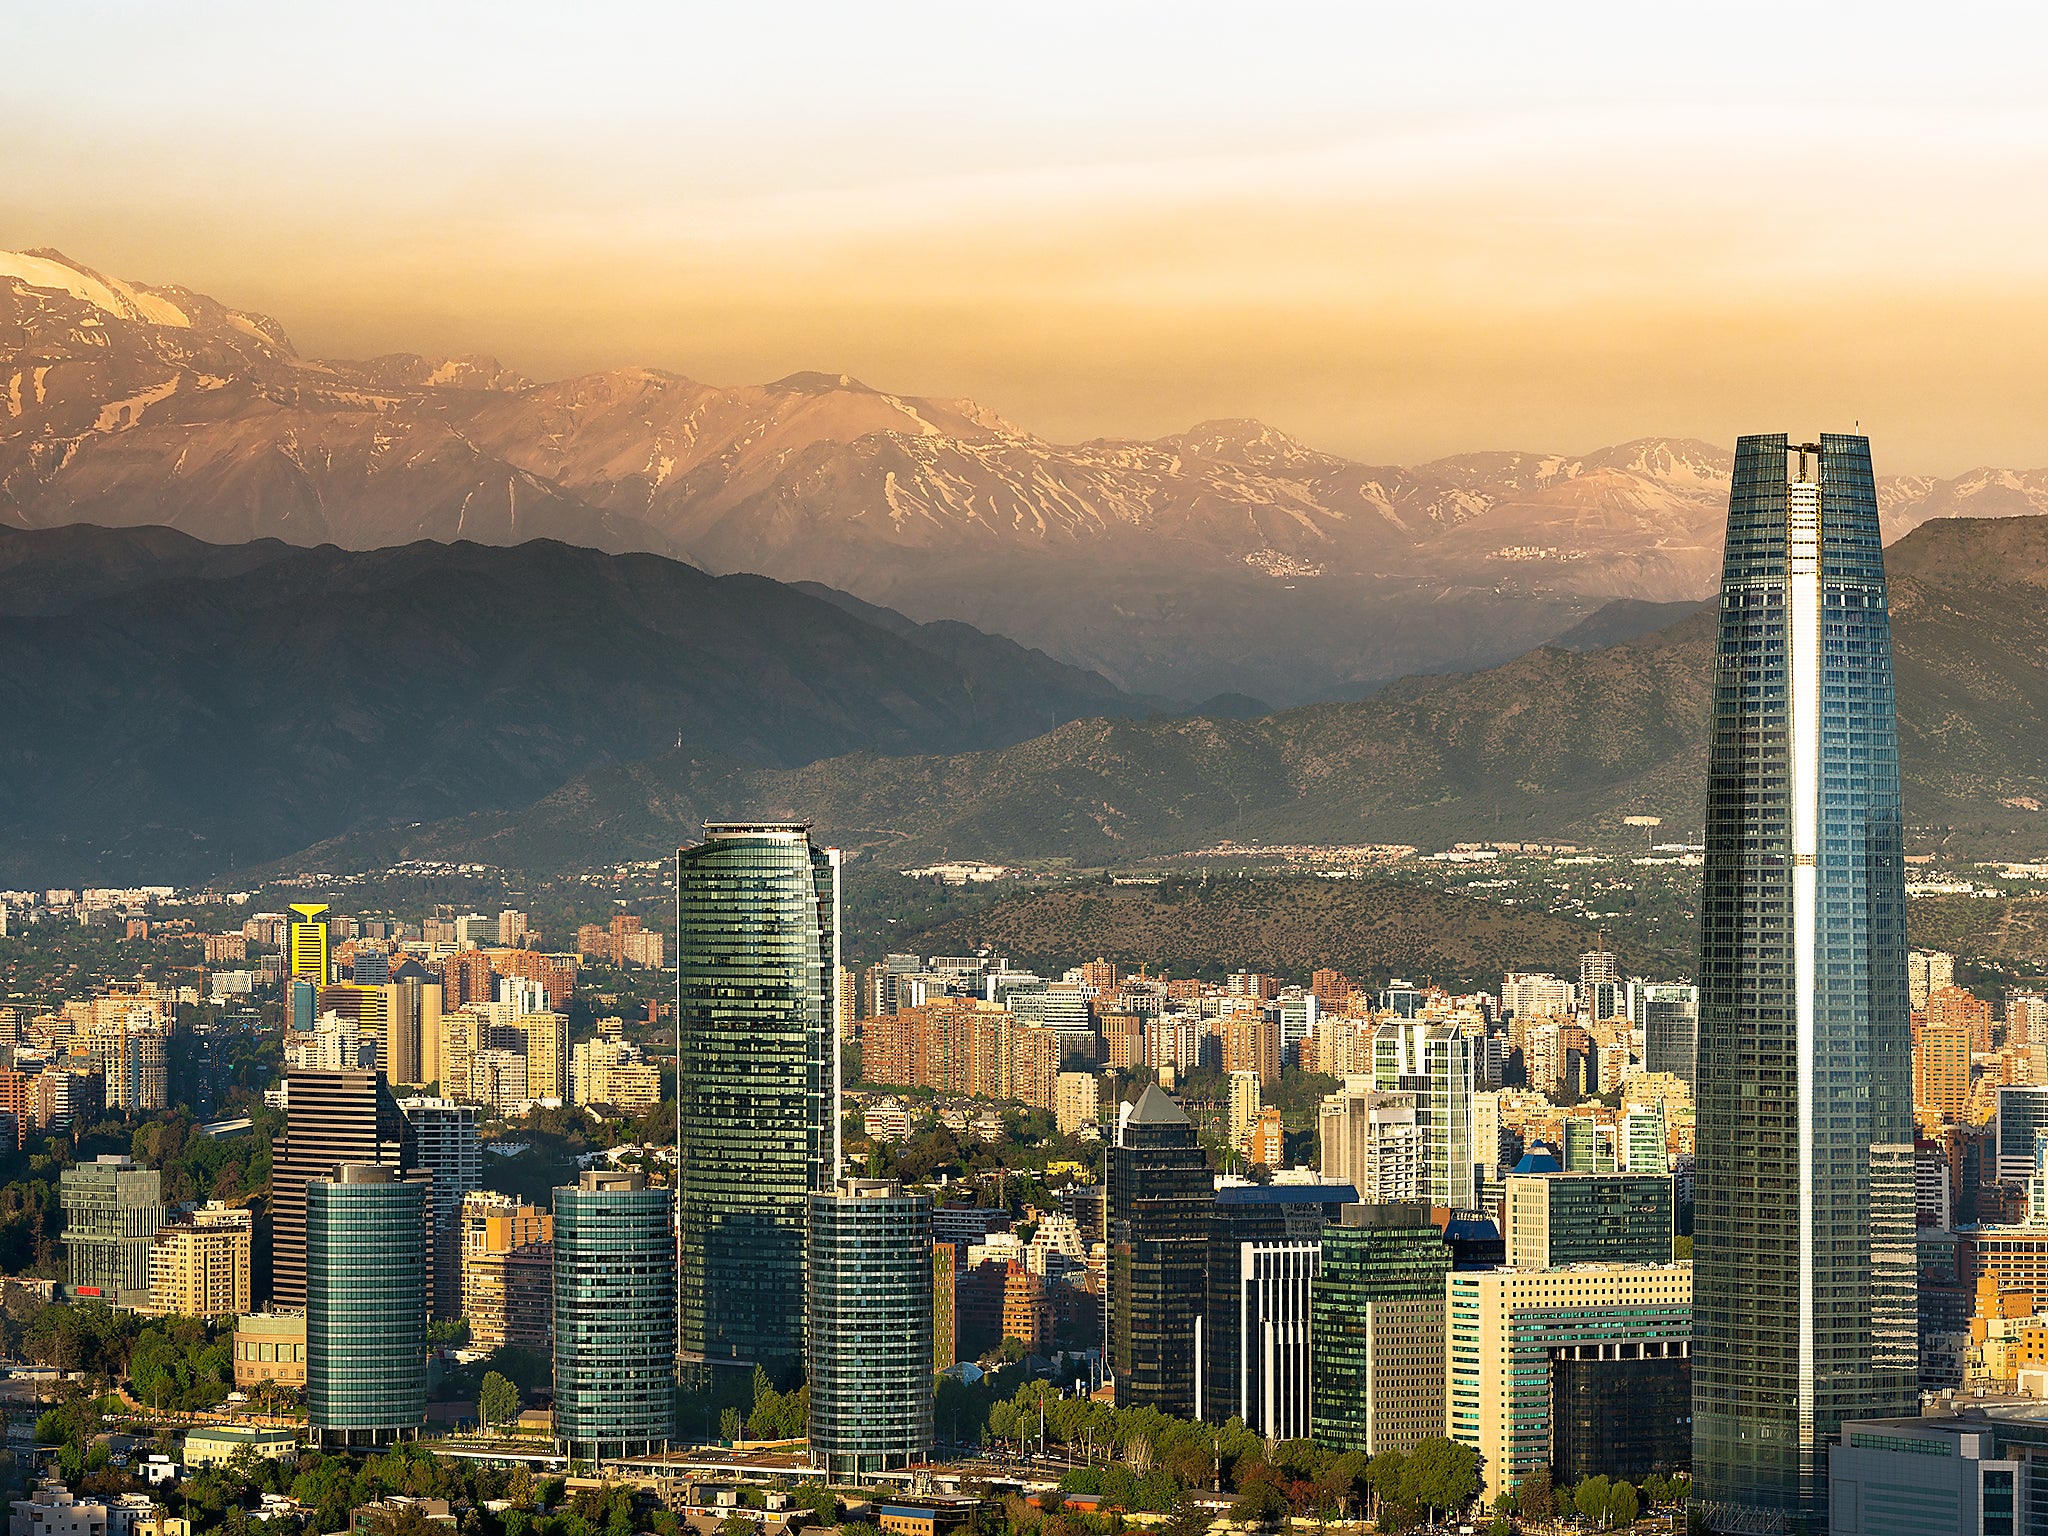 View of Santiago de Chile